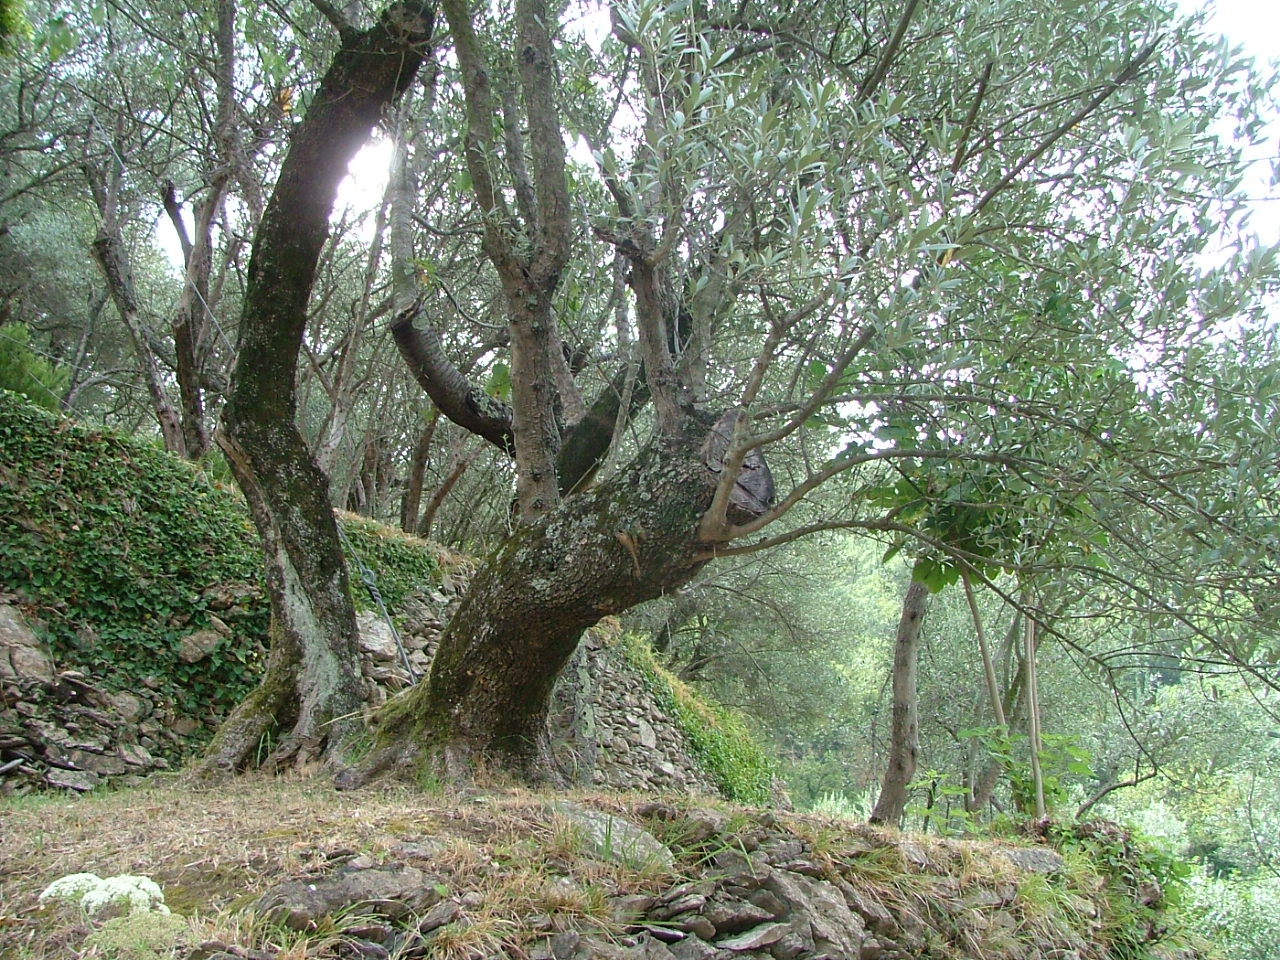 Coltivazione dell’olivo, svelati tutti i segreti sabato prossimo a Recco